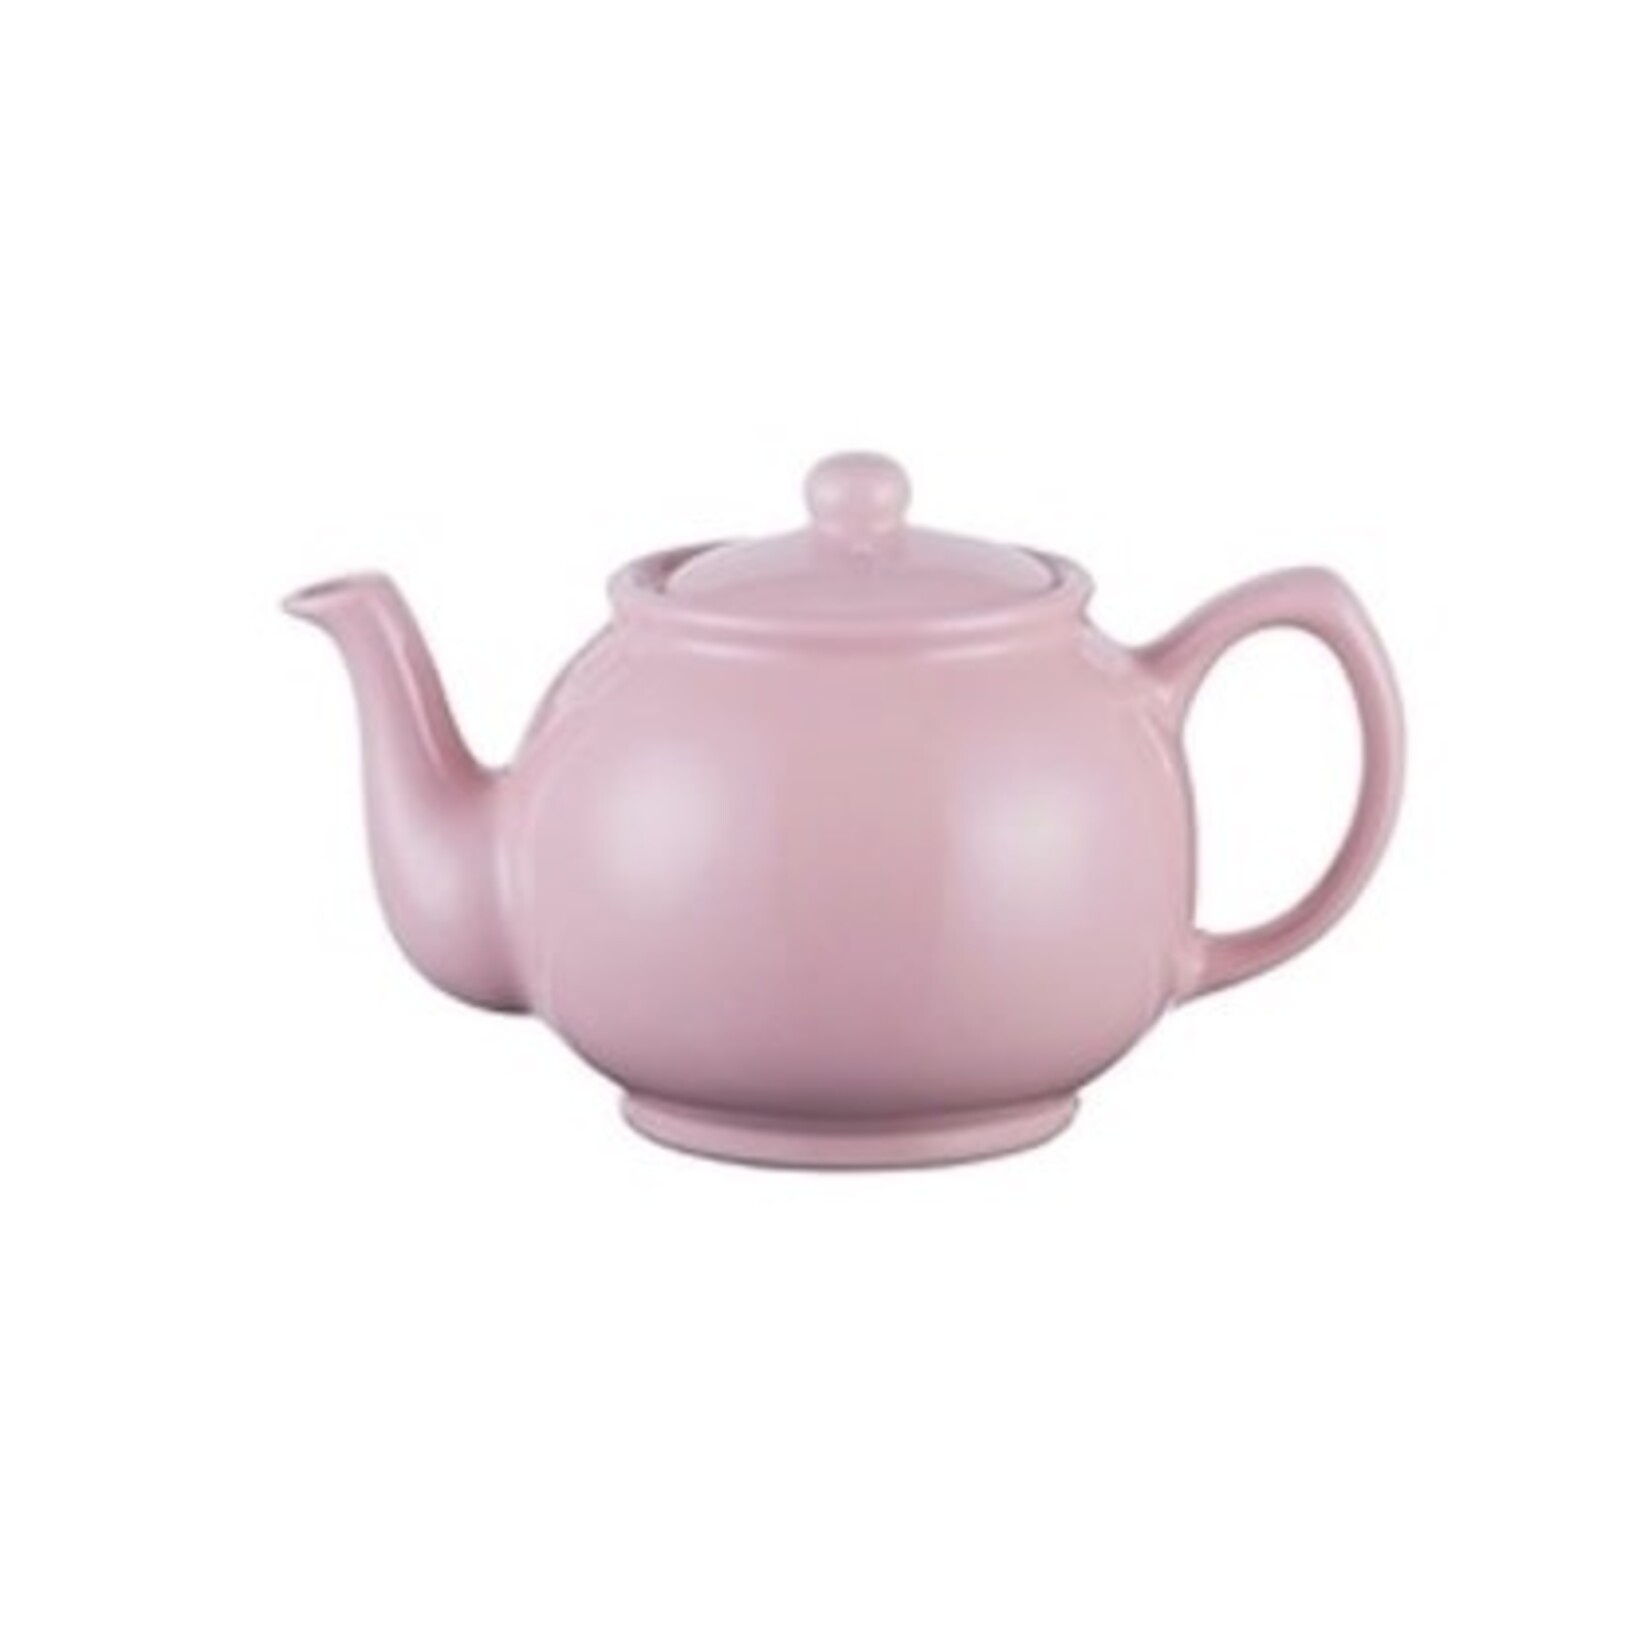 PRICE & KENSINGTON PRICE & KENSINGTON Pastel Teapot 6 Cup Pink